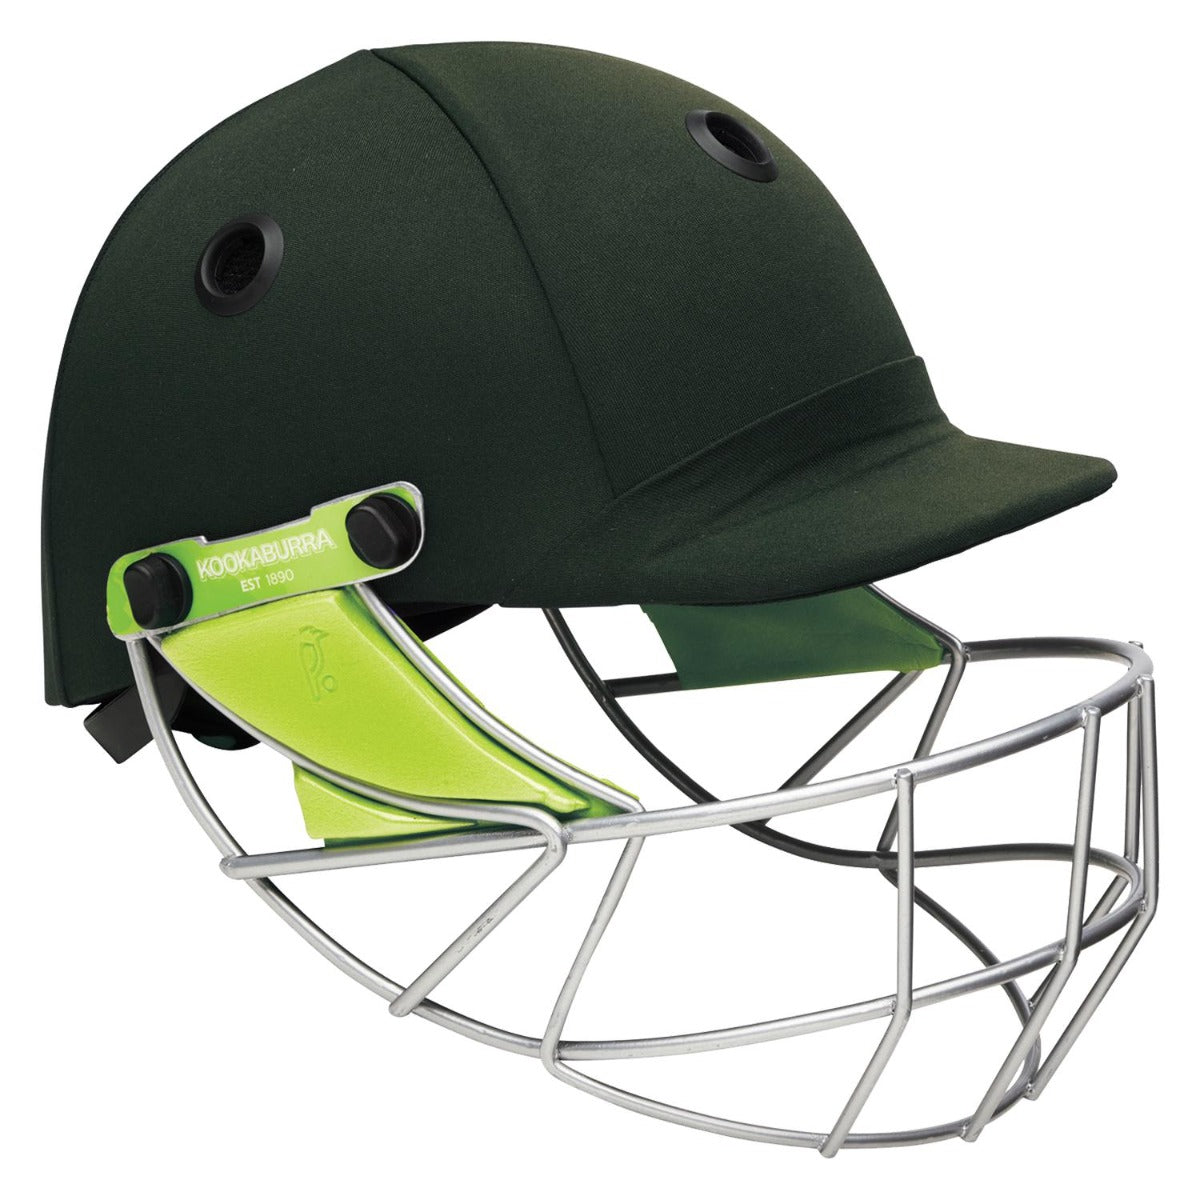 Kookaburra Pro 600 Helmet - Green